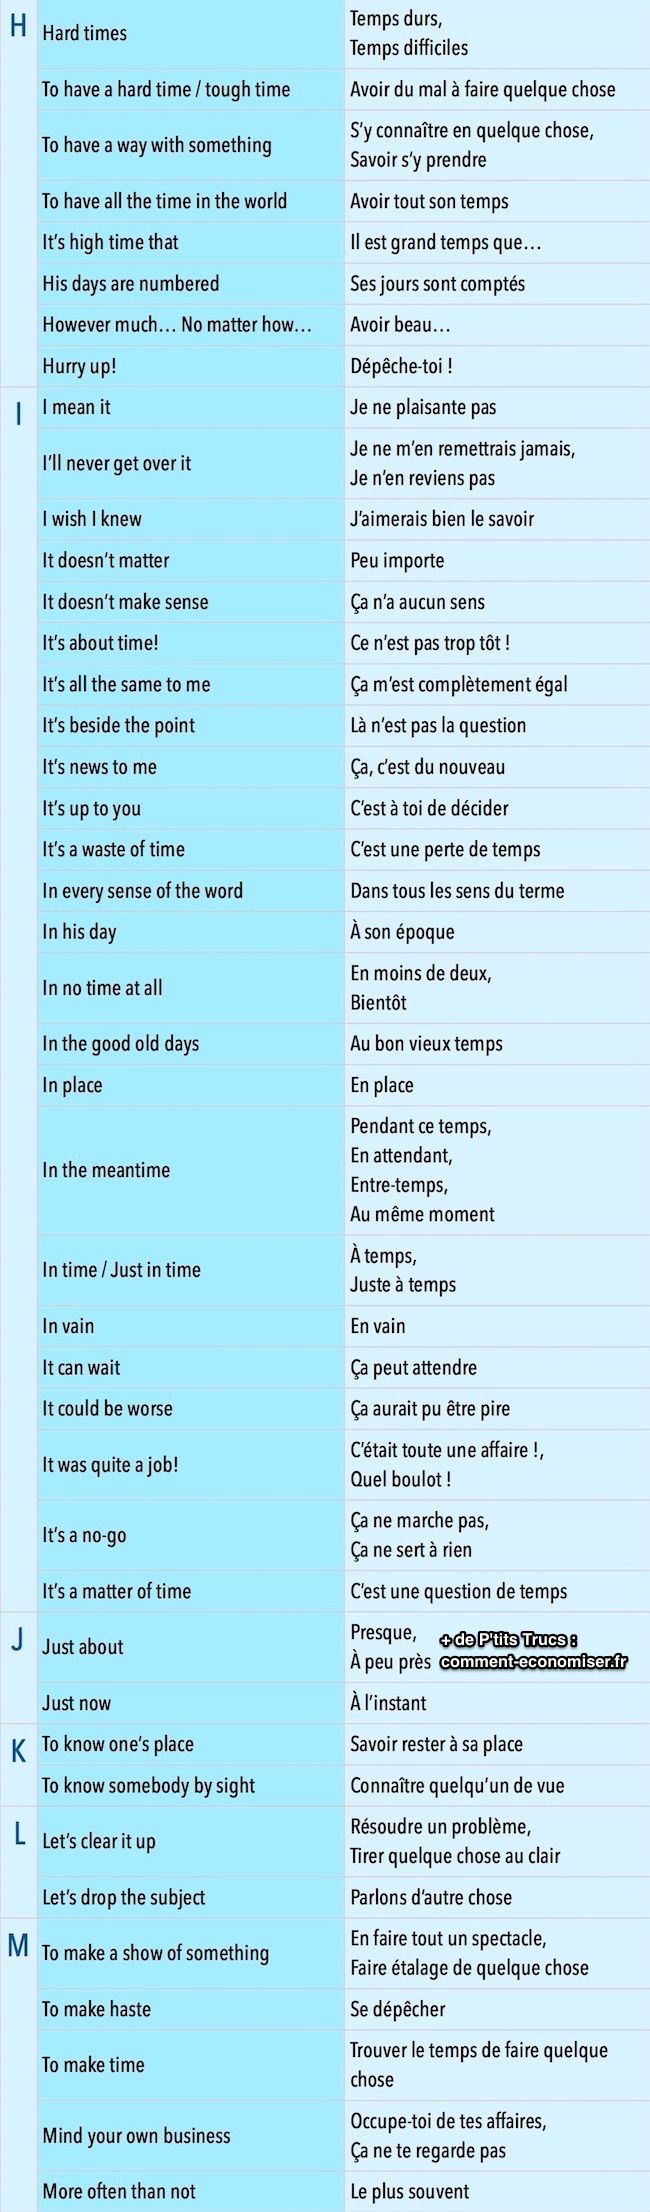 Følge uttrykk på fransk og engelsk å vite